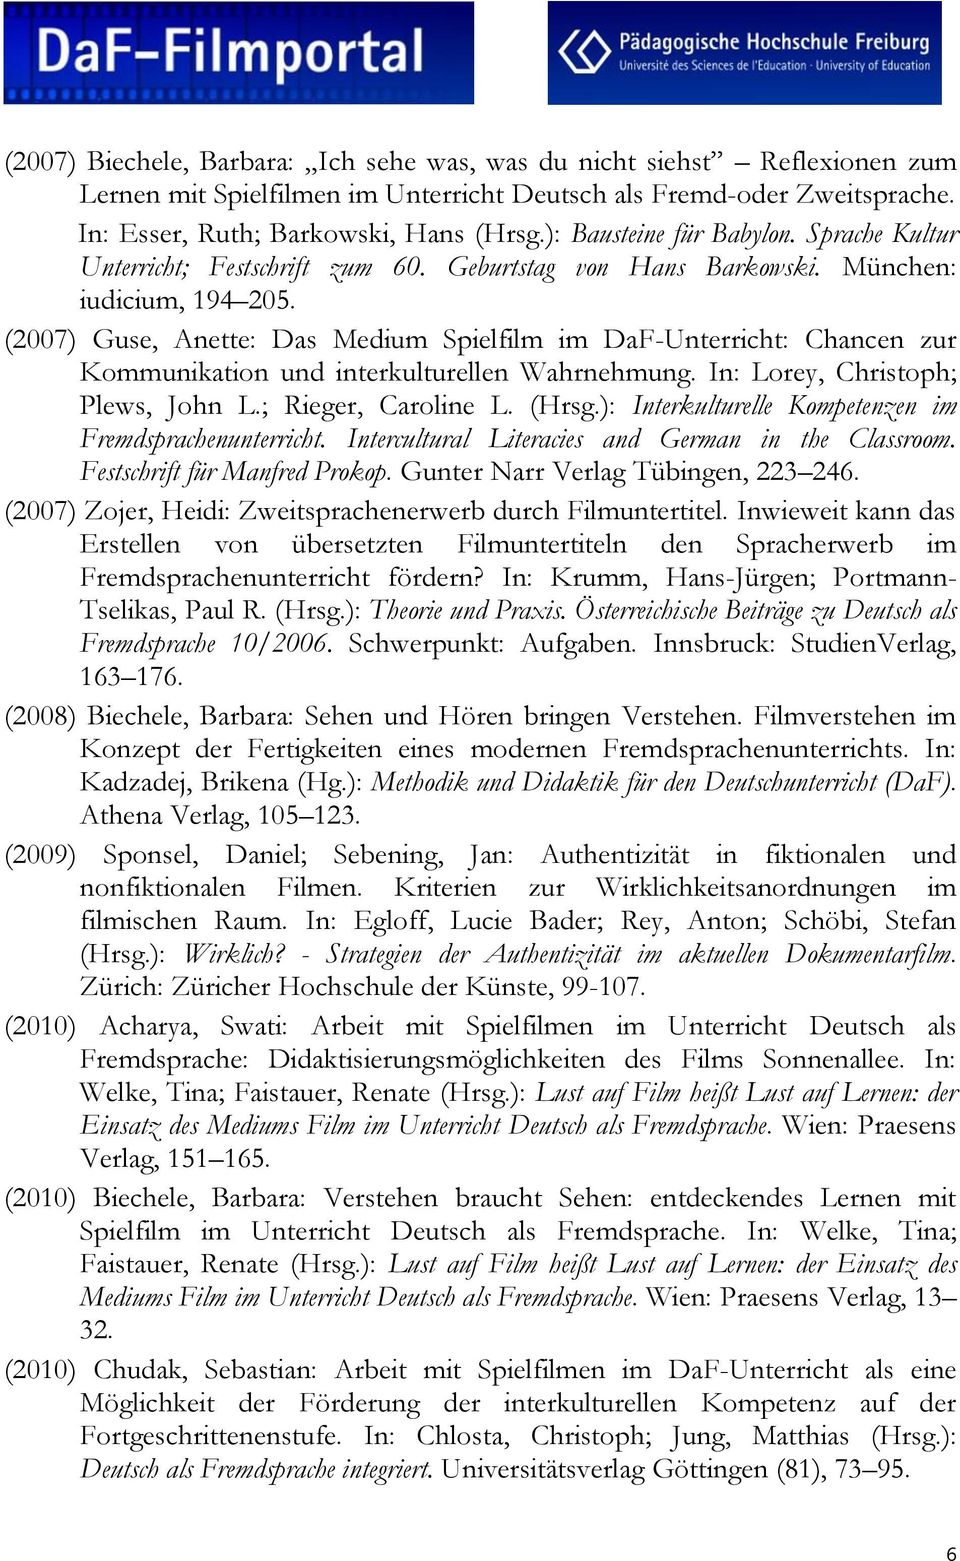 (2007) Guse, Anette: Das Medium Spielfilm im DaF-Unterricht: Chancen zur Kommunikation und interkulturellen Wahrnehmung. In: Lorey, Christoph; Plews, John L.; Rieger, Caroline L. (Hrsg.